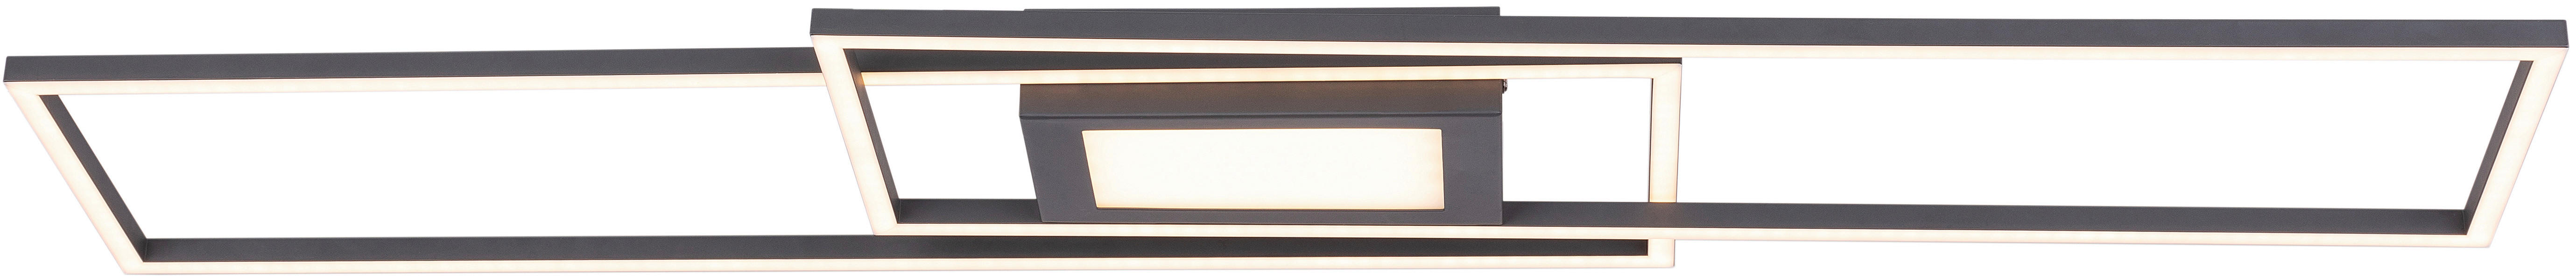 LED STROPNÉ SVIETIDLO, 105/26,6/5 cm - antracitová, Design, kov (105/26,6/5cm) - Novel